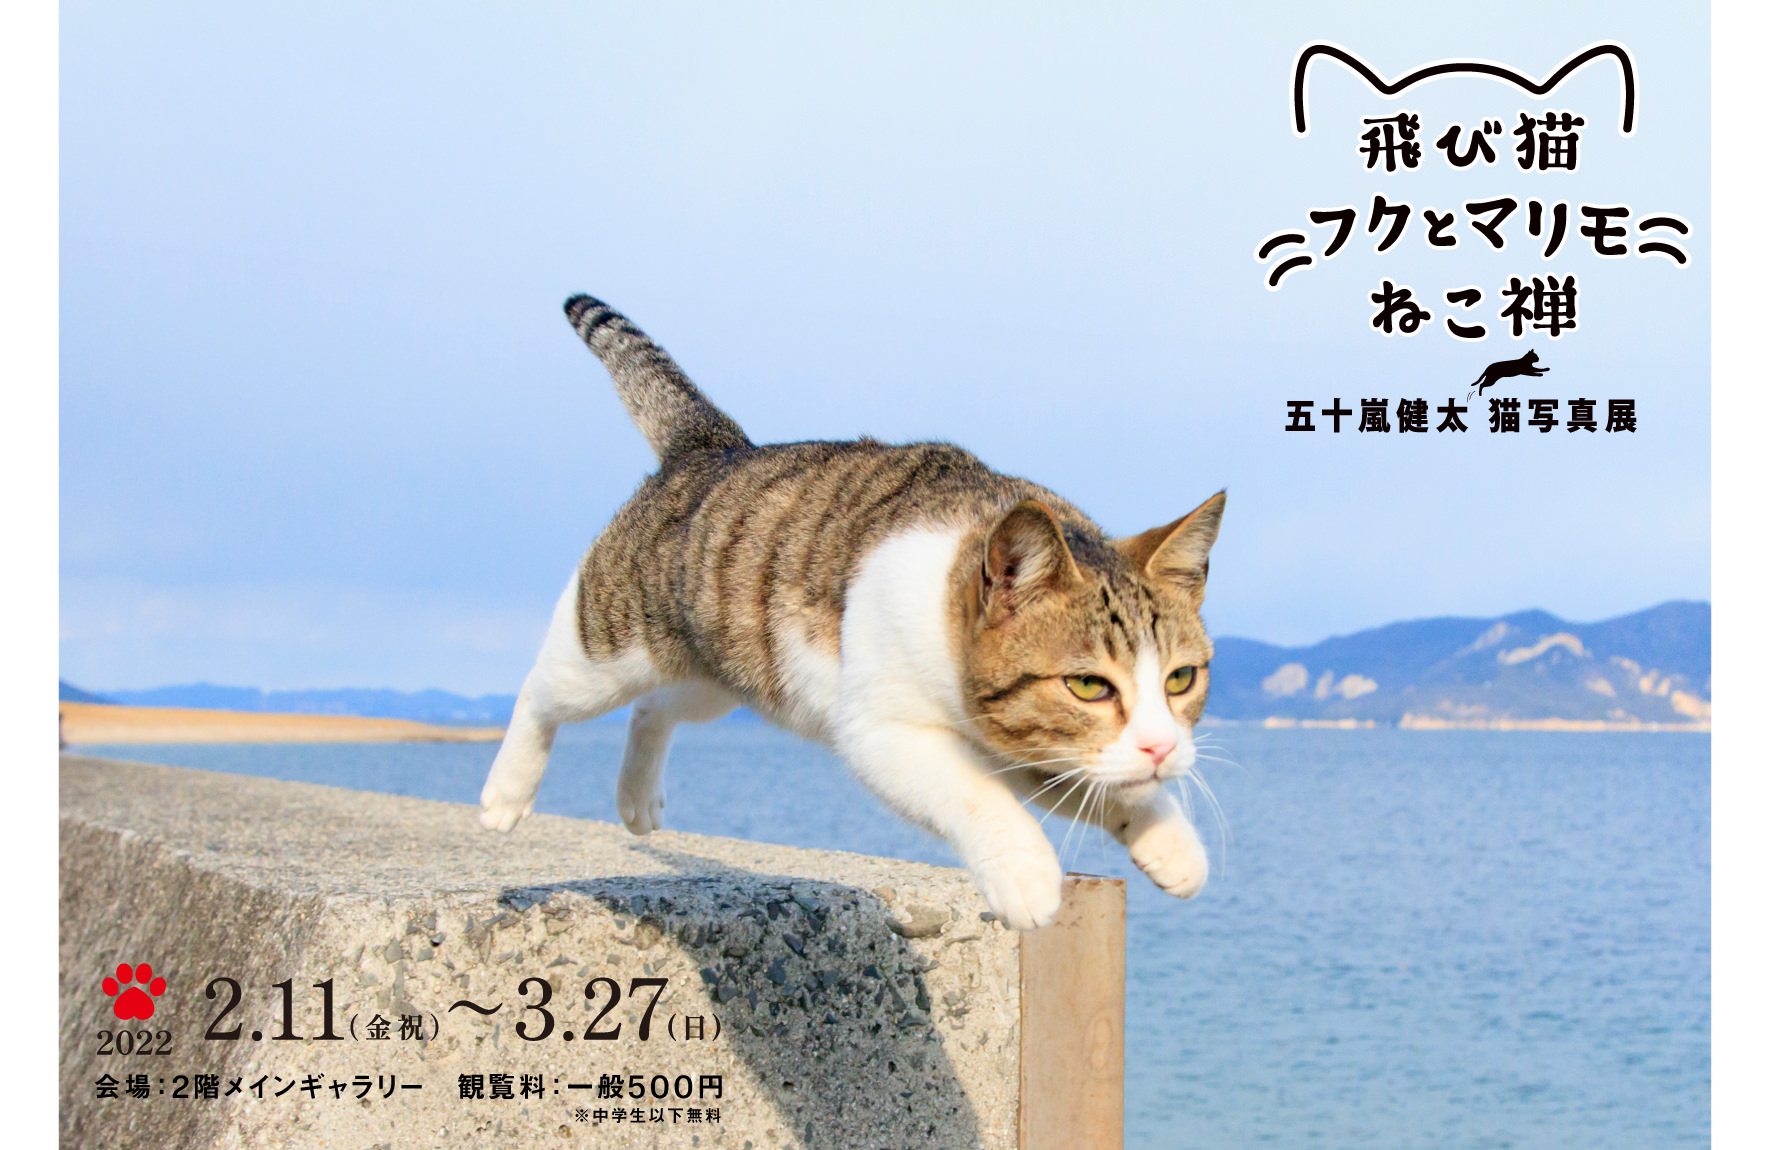 五十嵐健太 飛び猫写真展